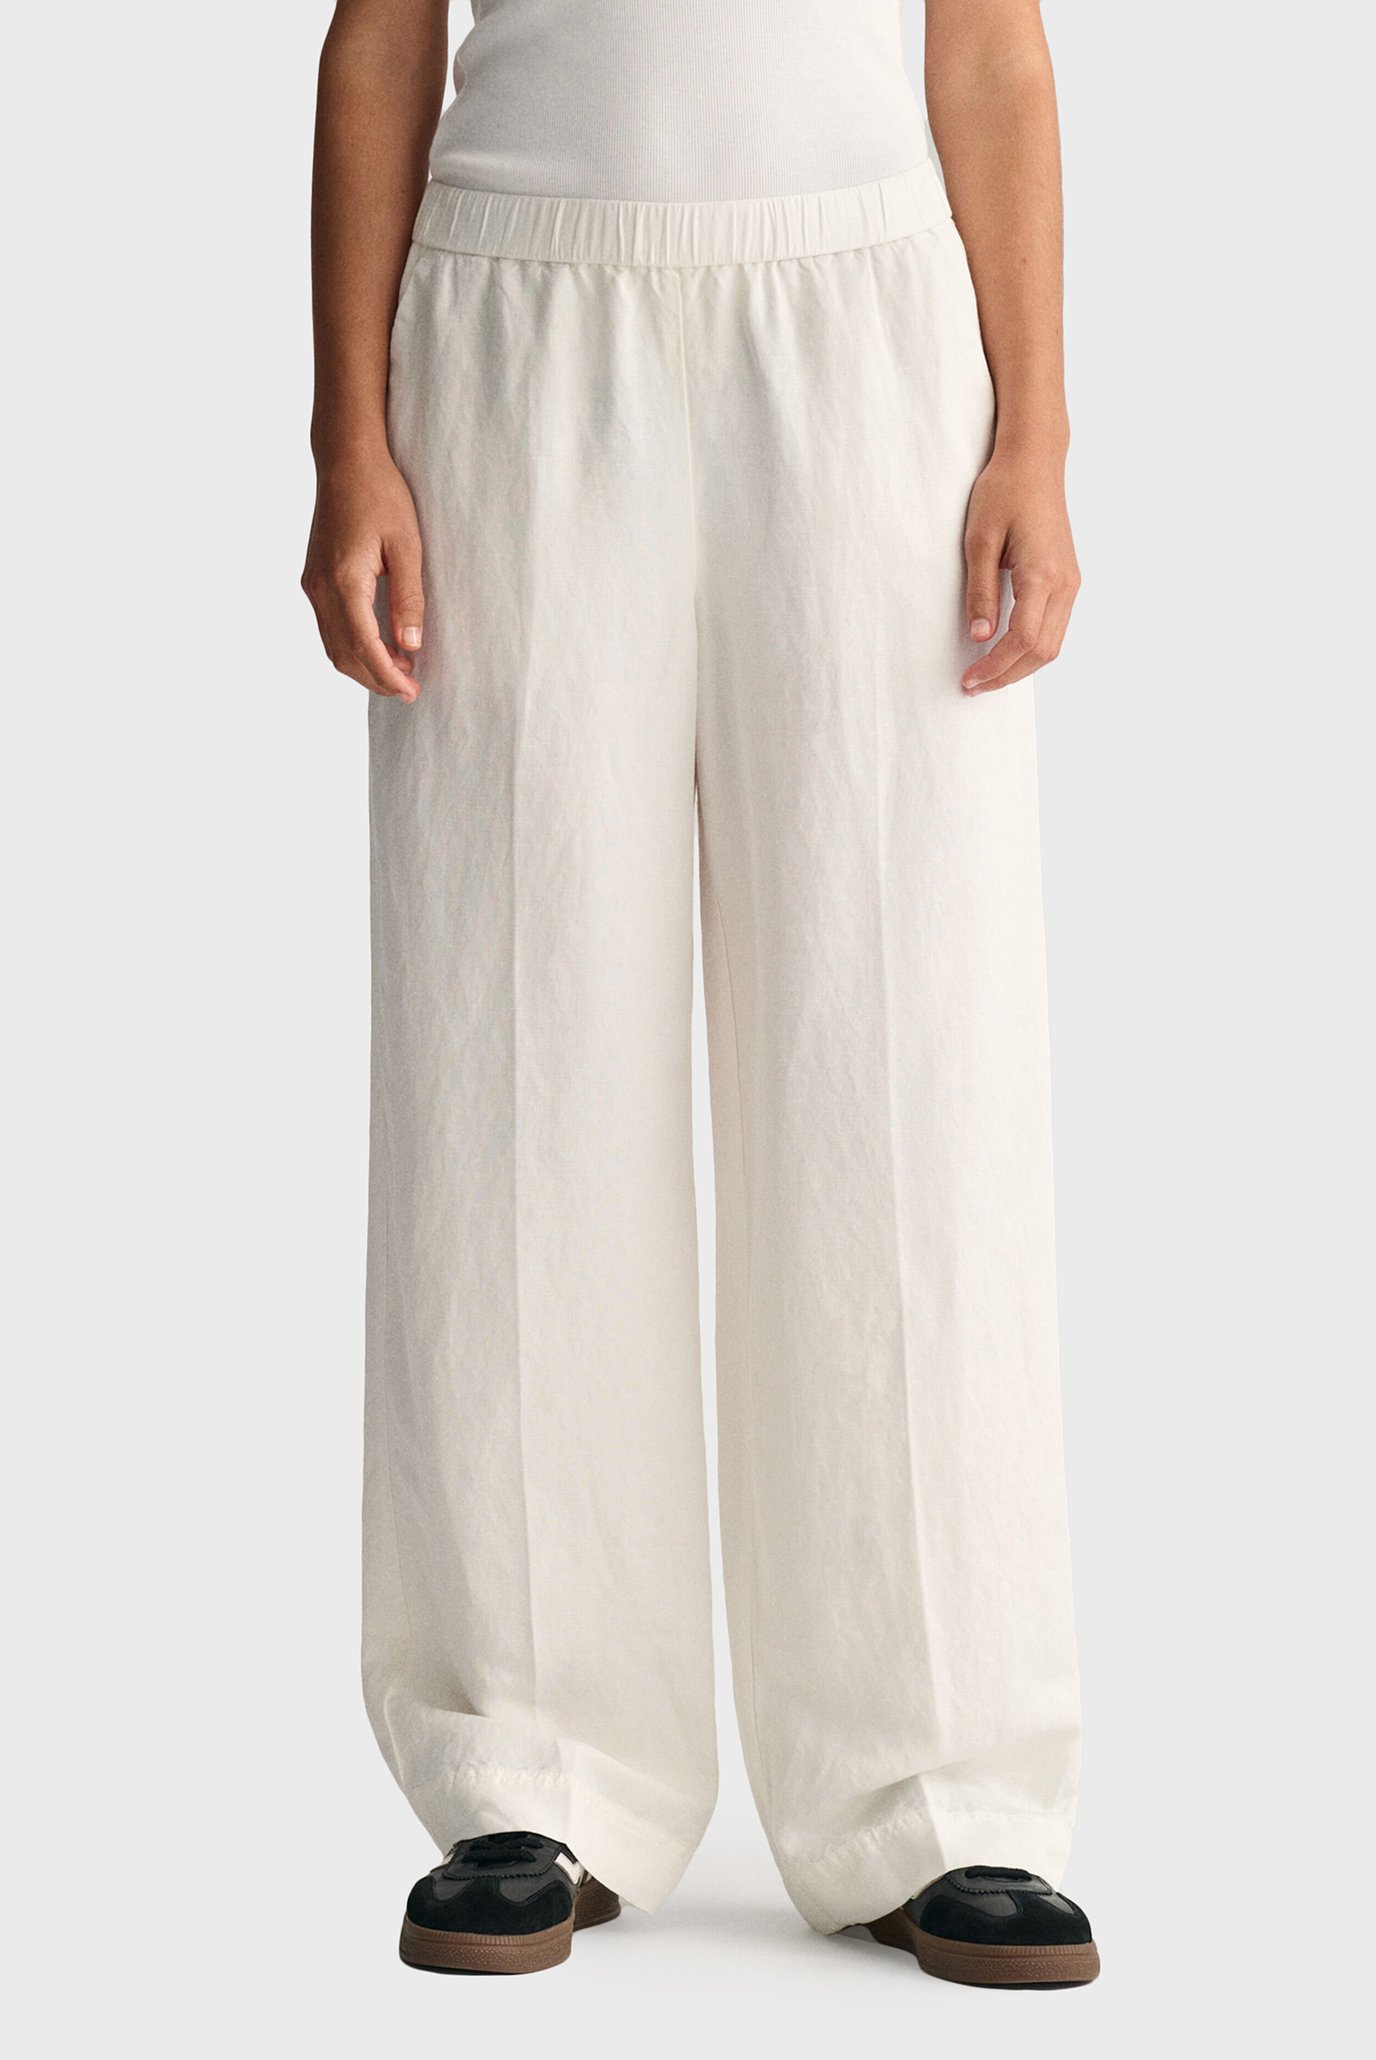 Жіночі білі лляні брюки REL LINEN BLEND PULL ON 1